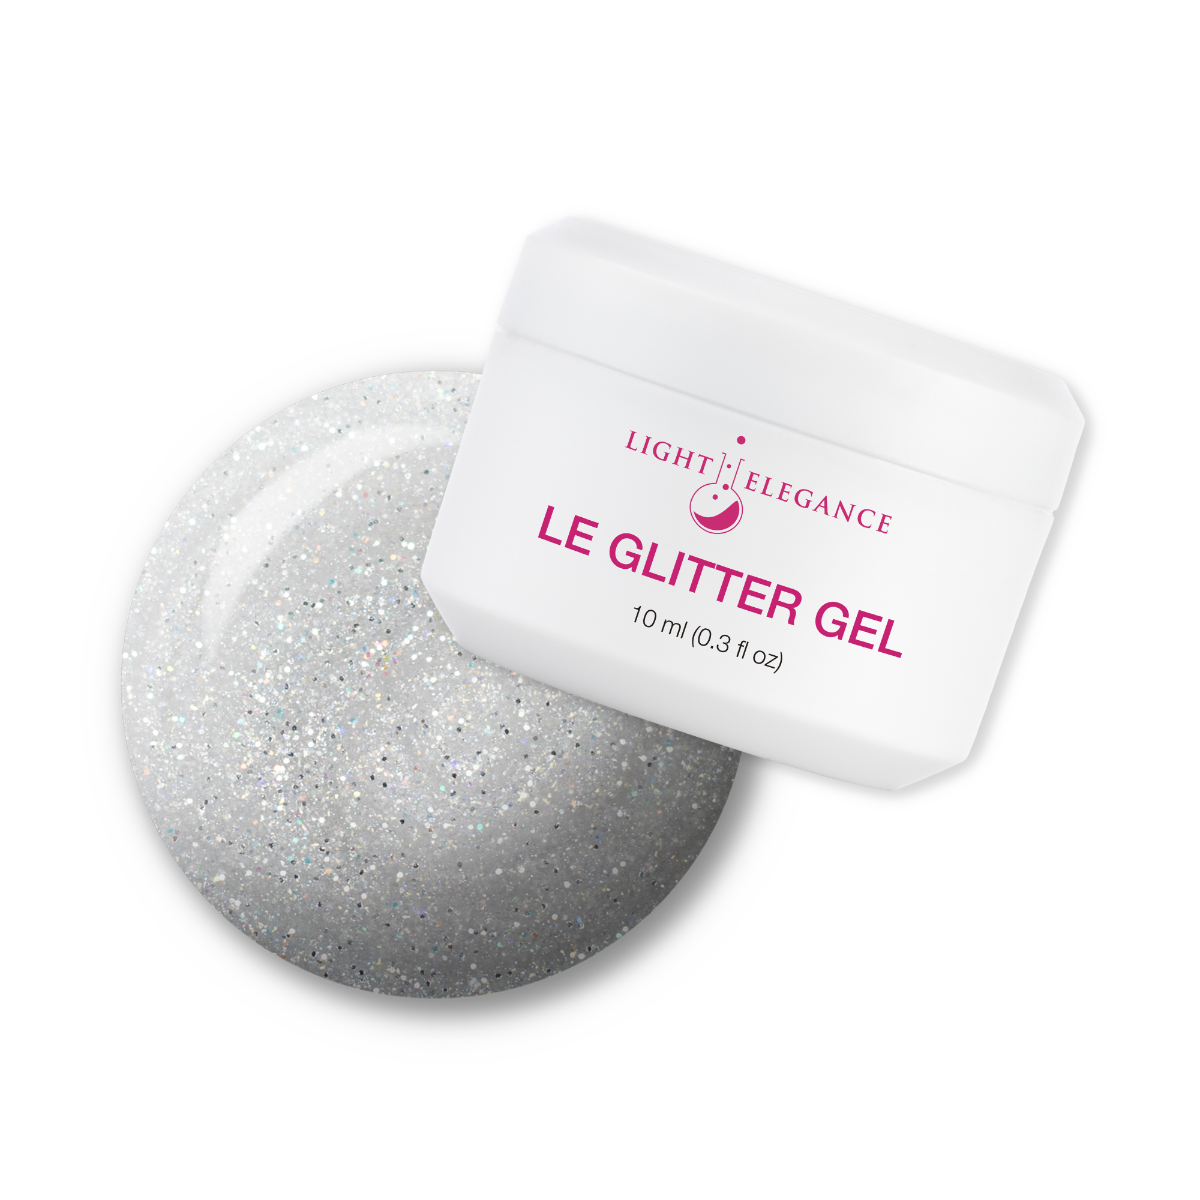 Light Elegance Glitter Gel - Tiny Diamond :: New Packaging